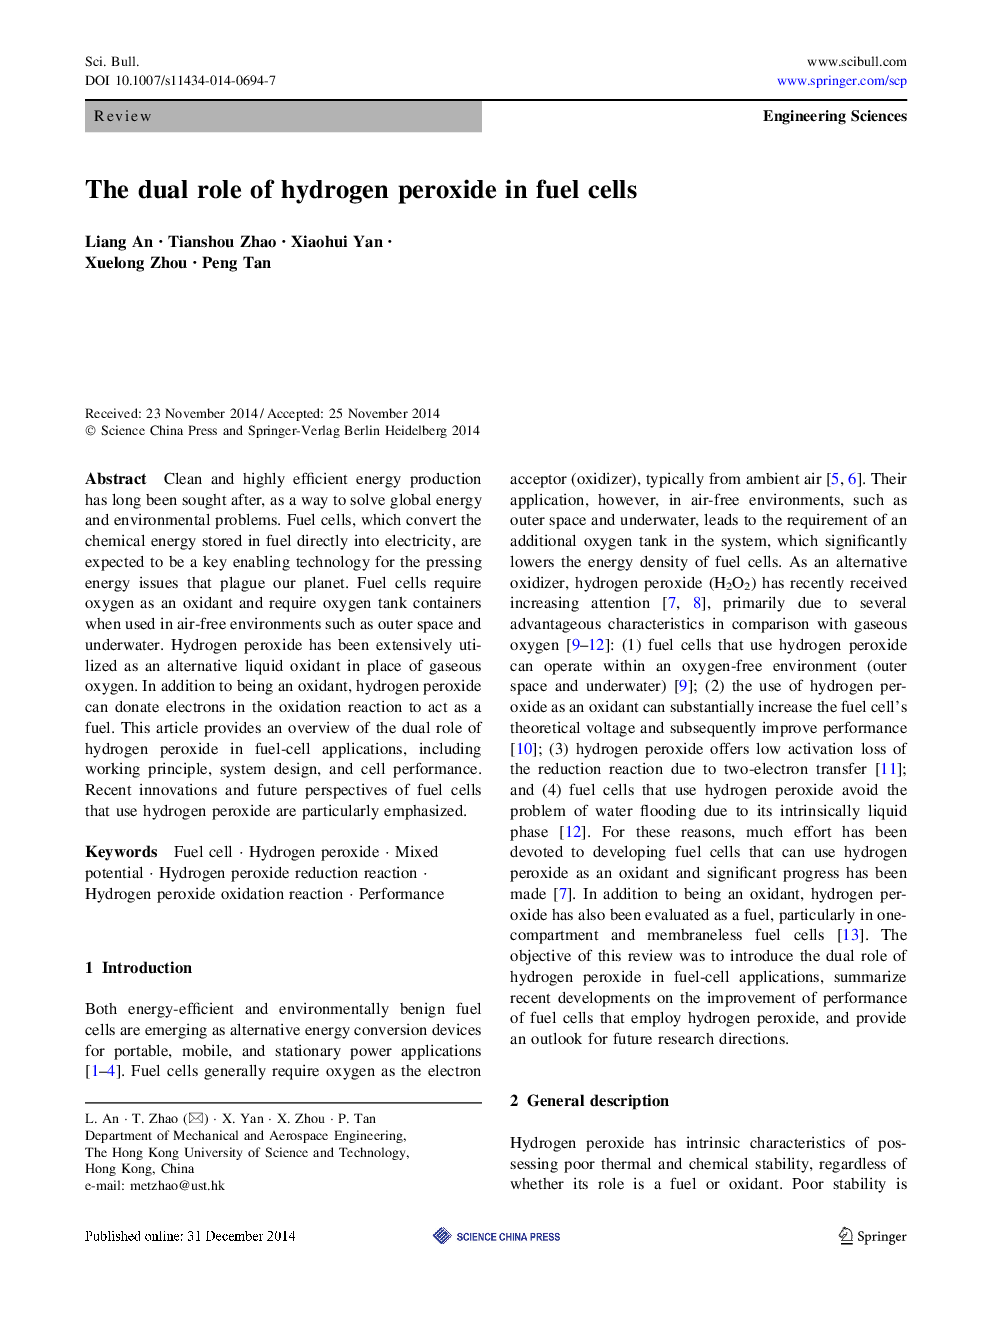 نقش دوگانه پراکسید هیدروژن در سلول های سوختی 